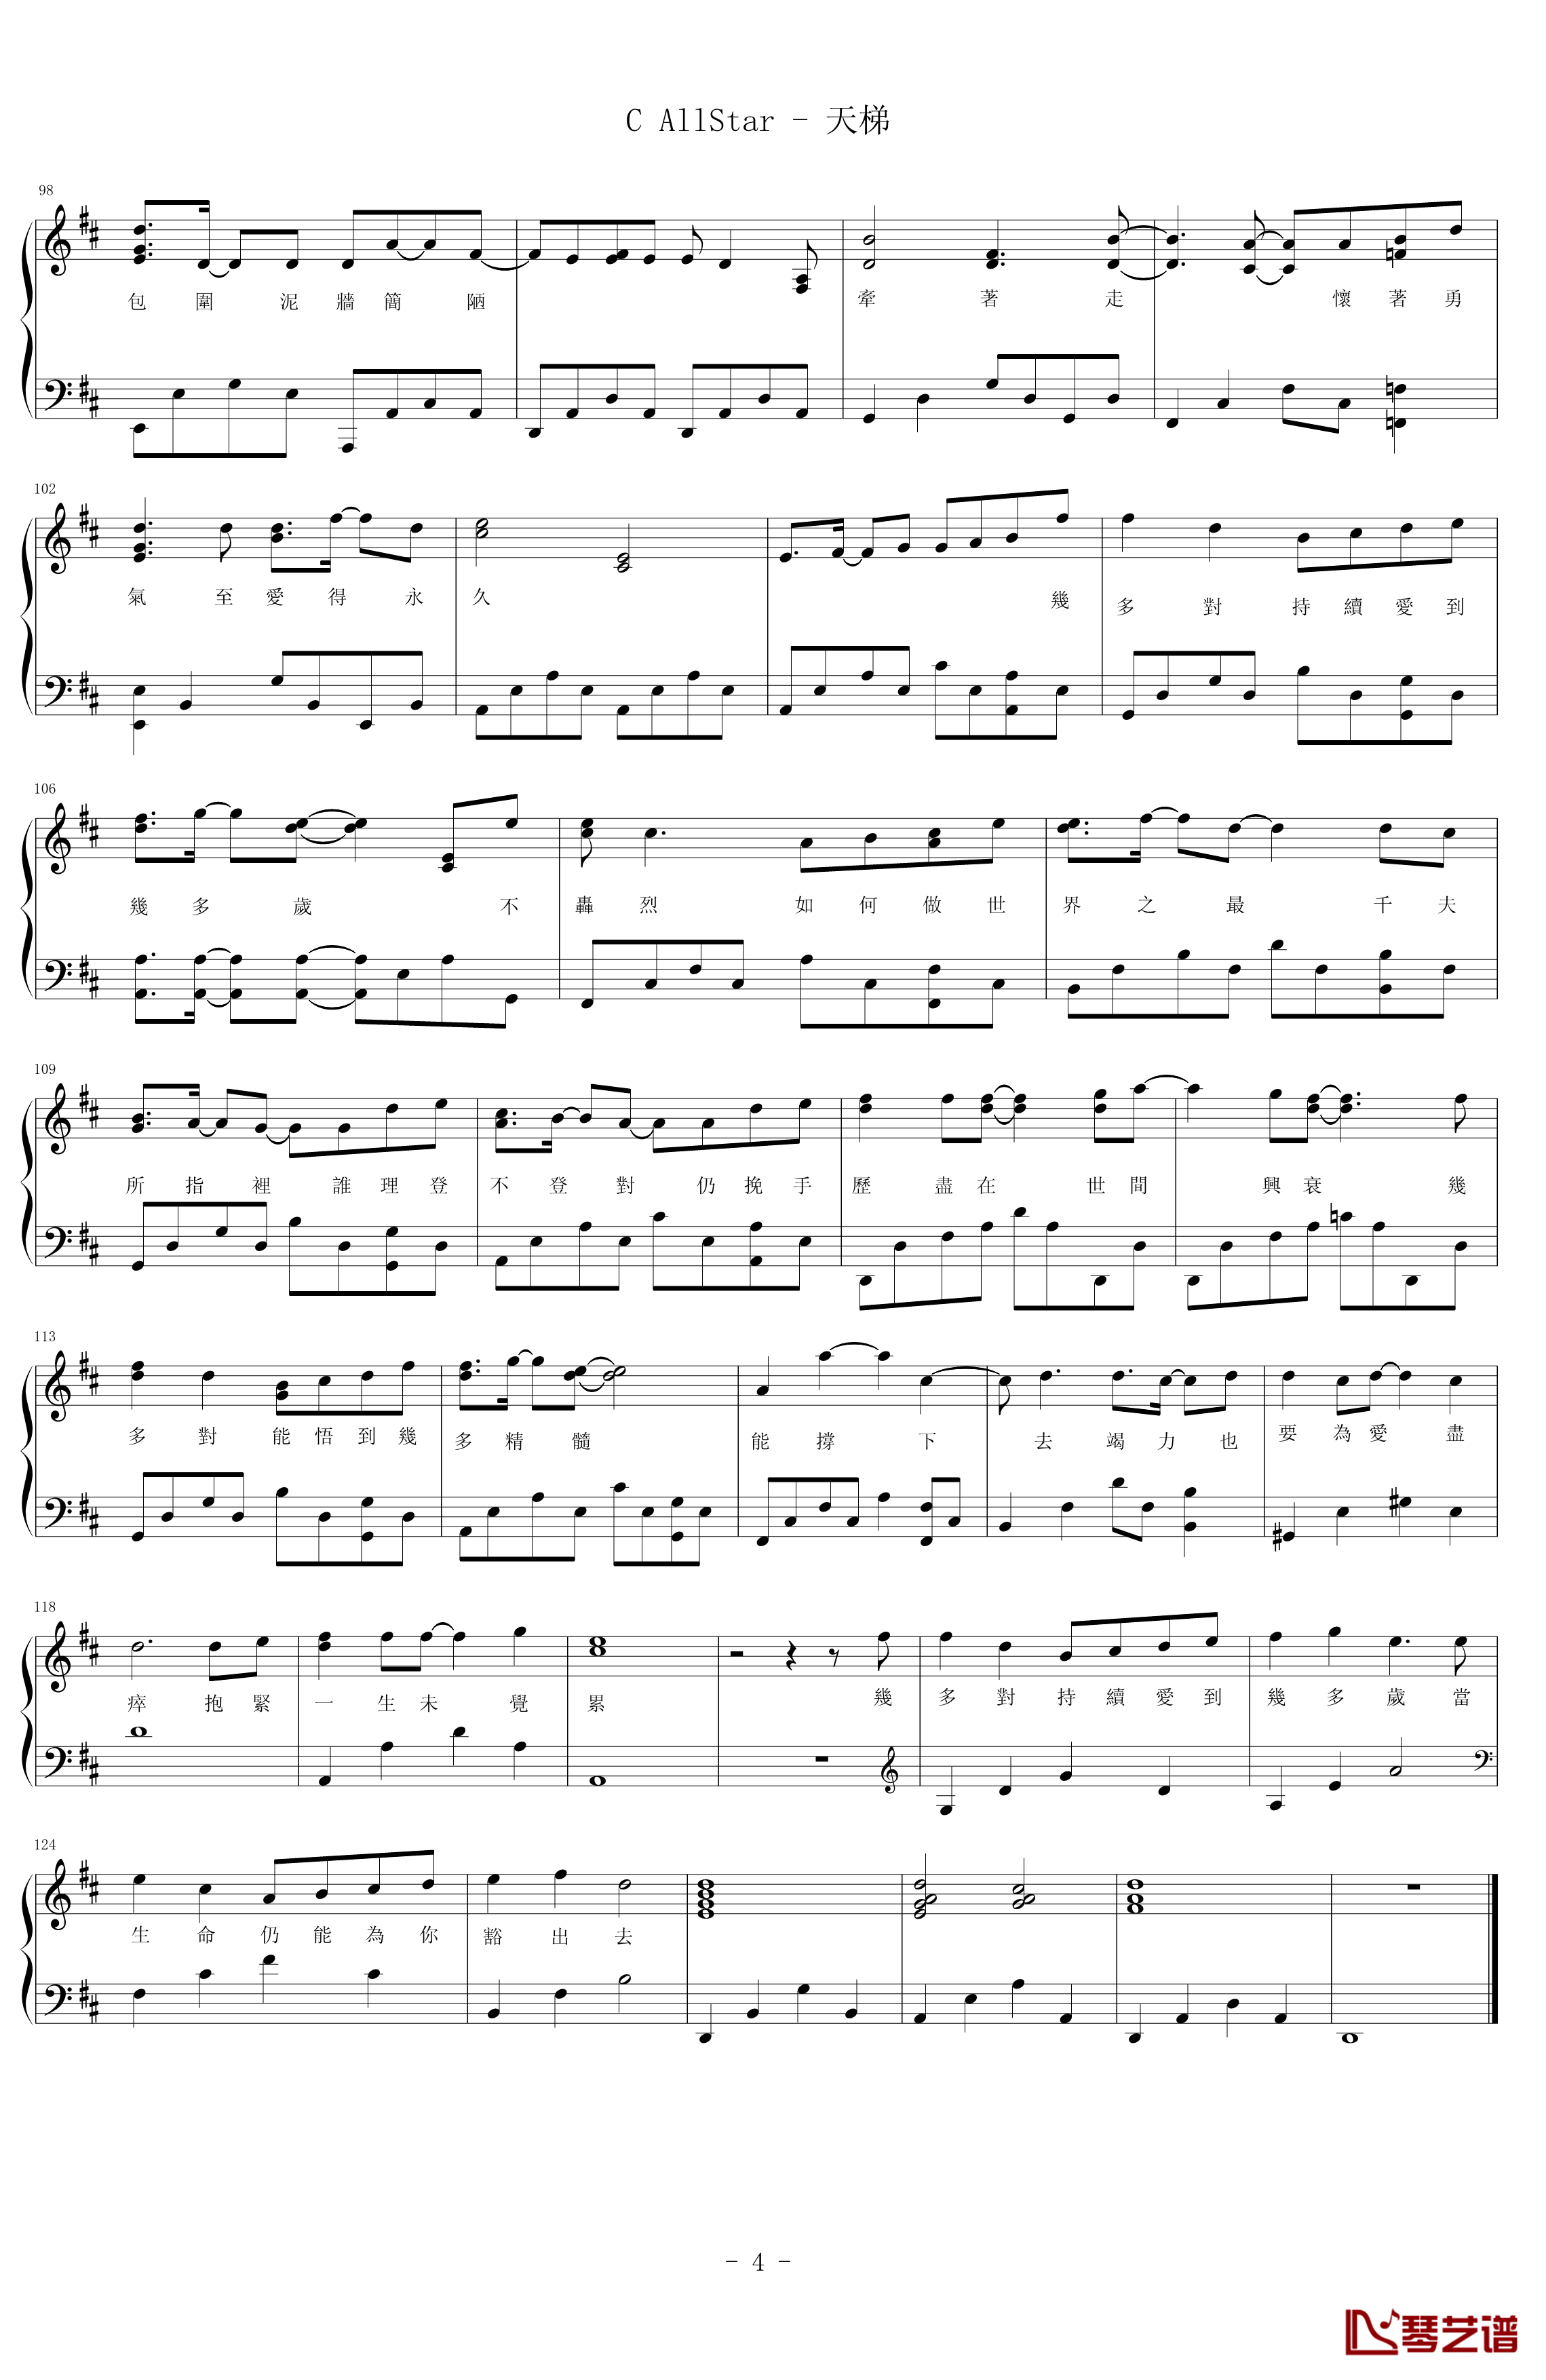 天梯钢琴谱-C AllStar4